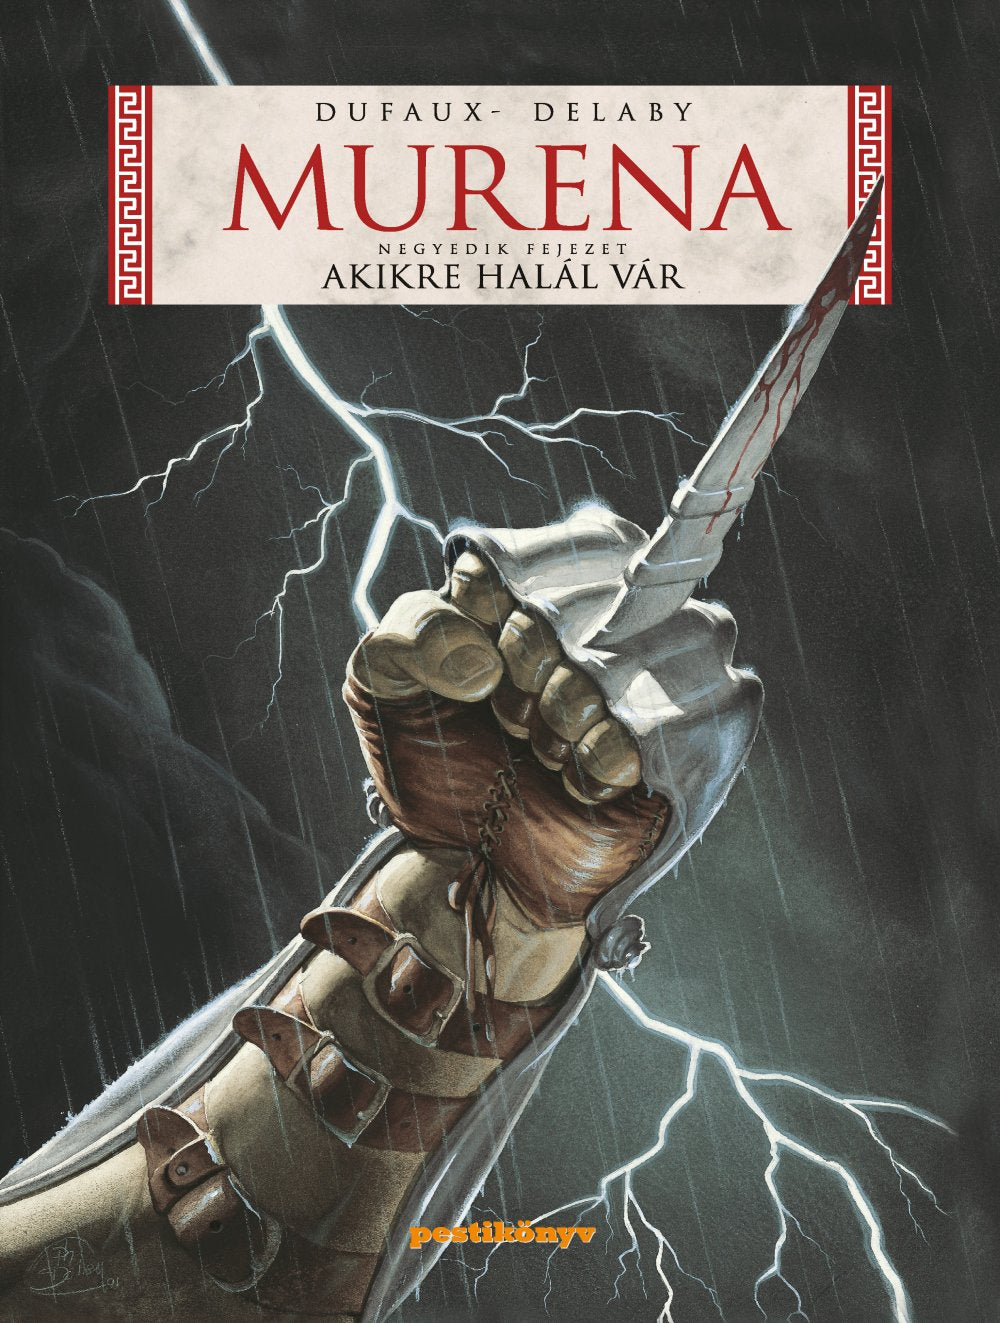 Murena - Akikre halál vár (negyedik fejezet)